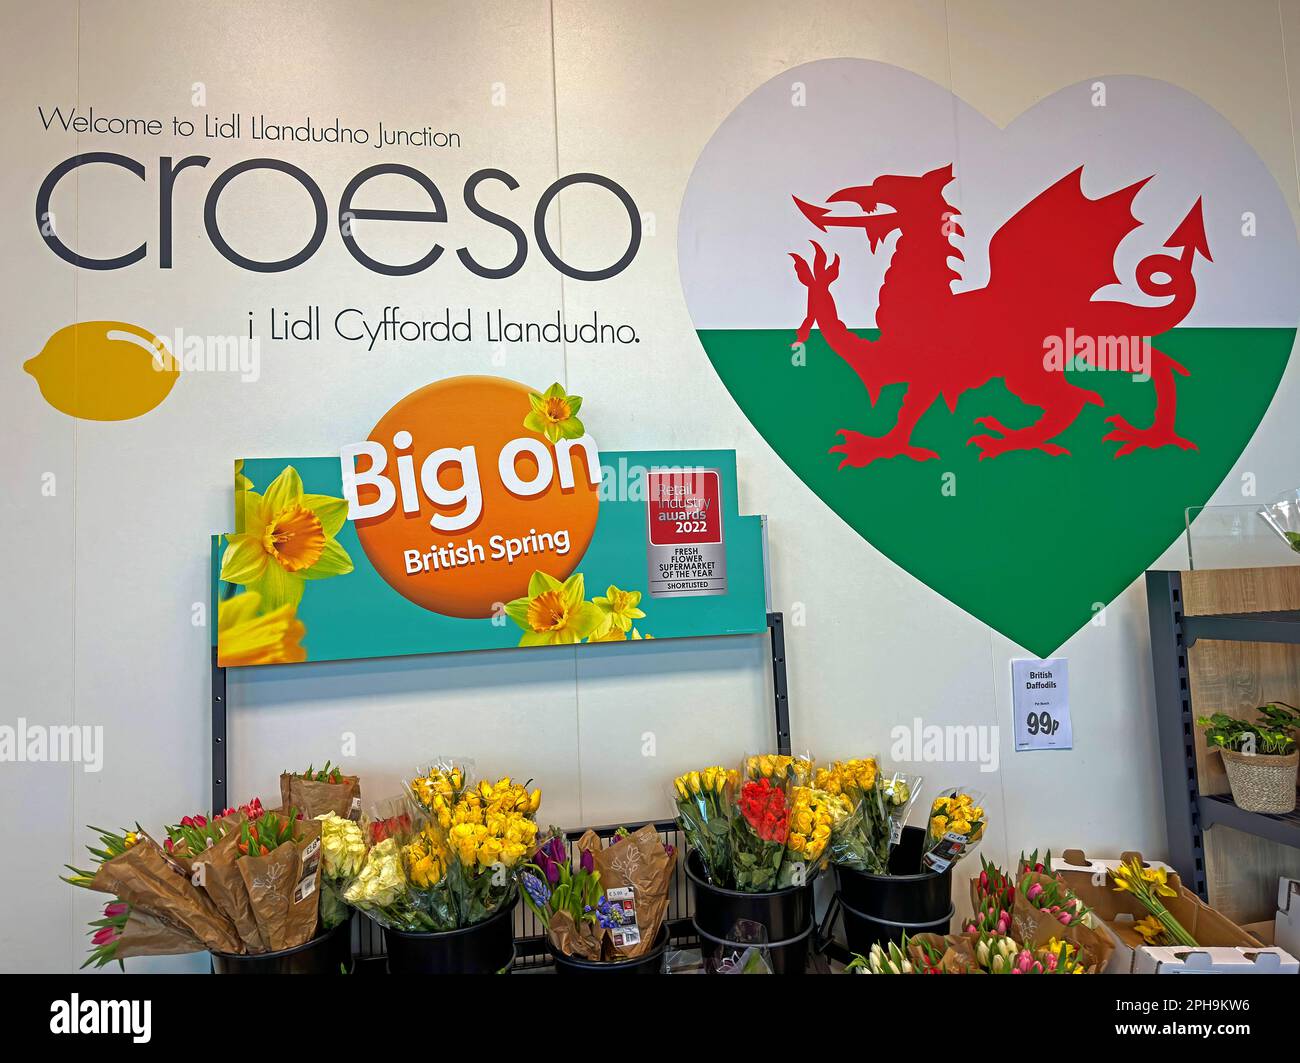 Bienvenue au supermarché LIDL à Llandudno Junction - i Cyffordd Llandudno, un coeur avec un dragon rouge gallois, des fleurs, des jonquilles Big on British Spring Banque D'Images